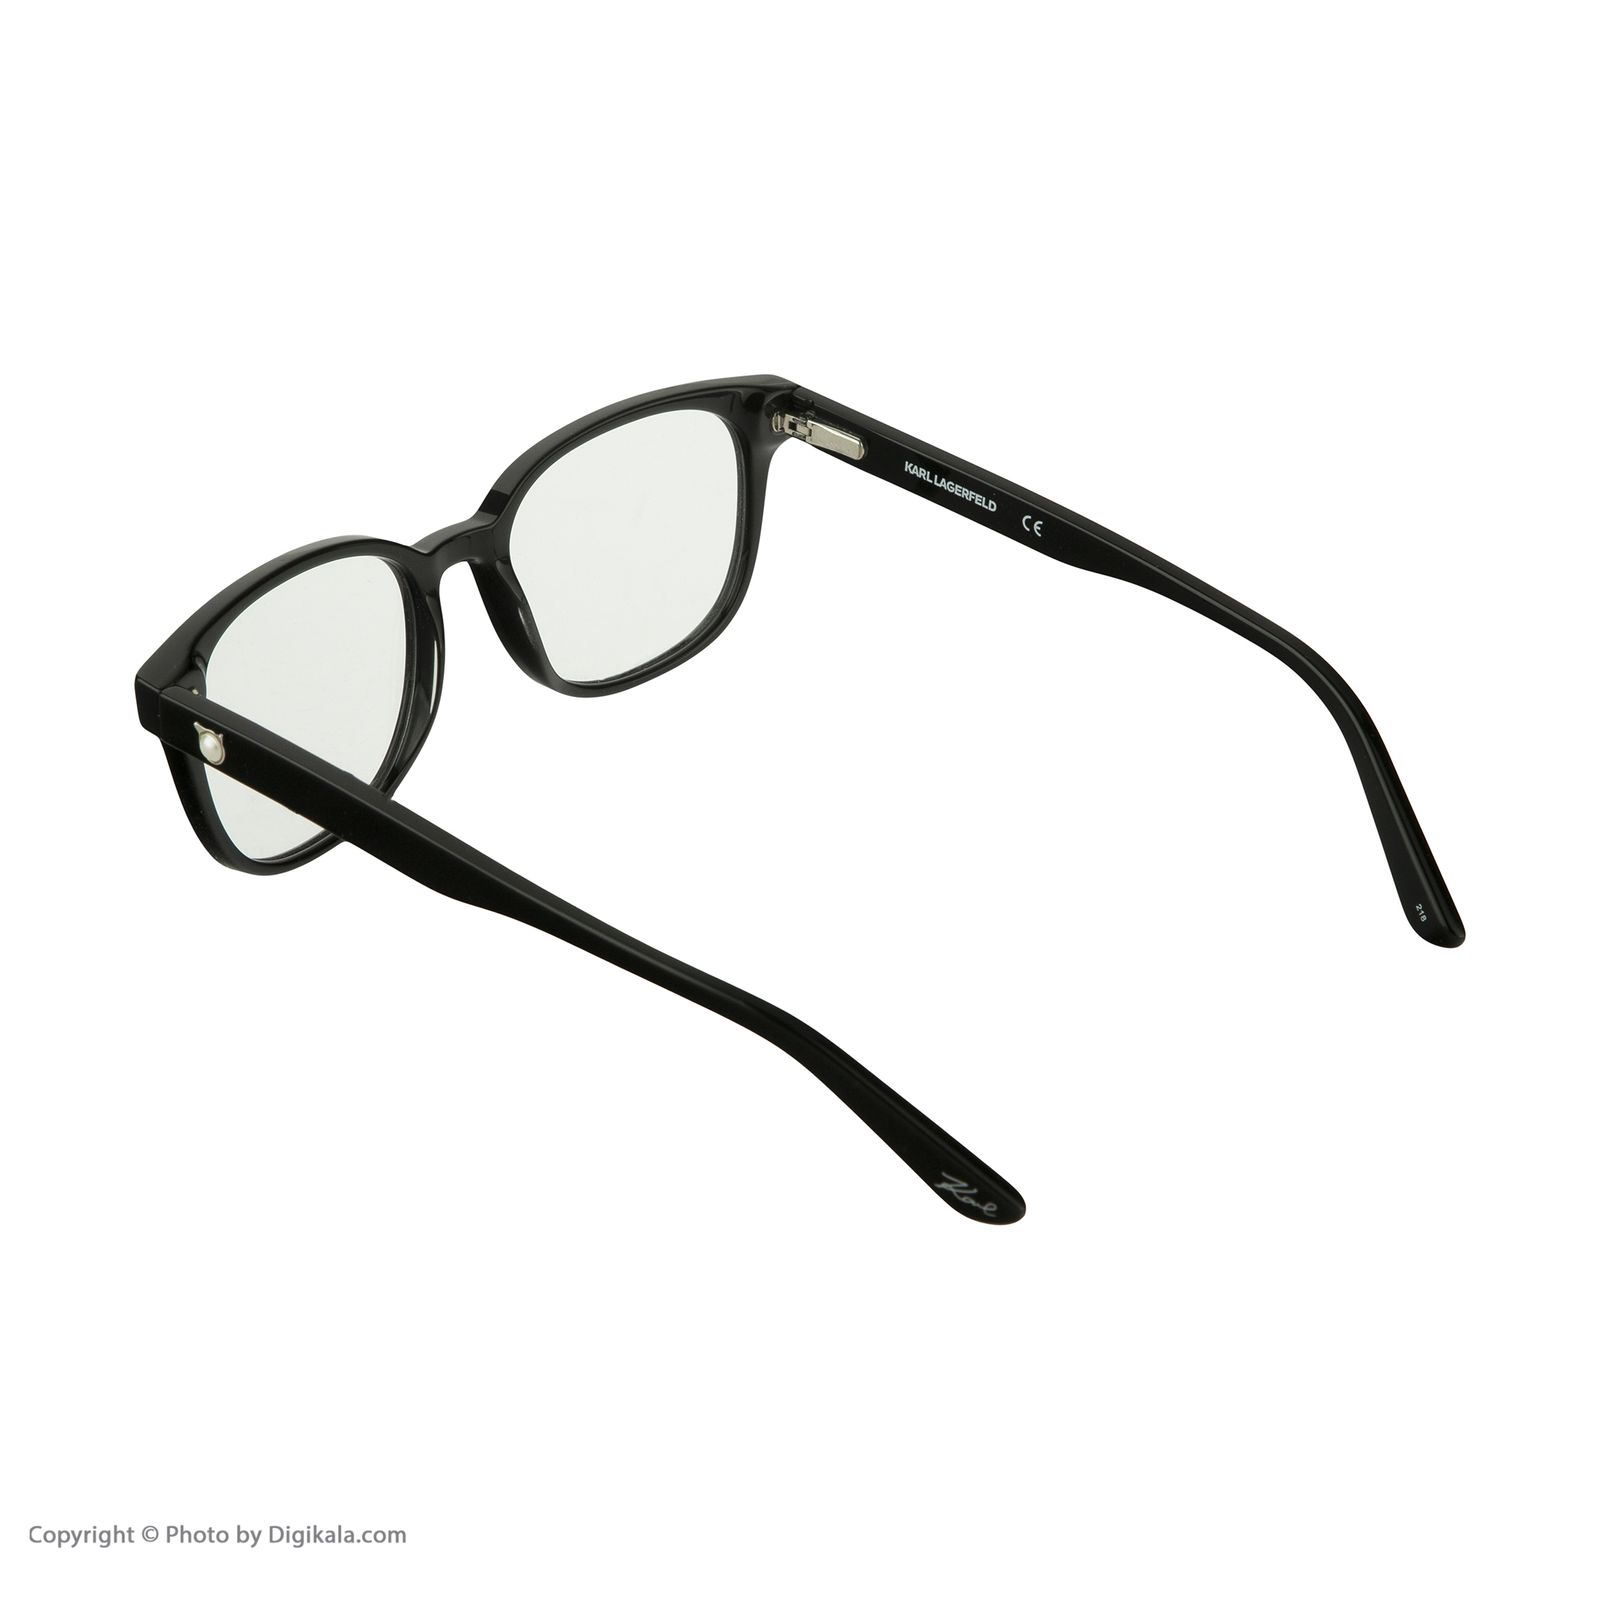 فریم عینک طبی کارل لاگرفلد مدل KL974V1 -  - 3